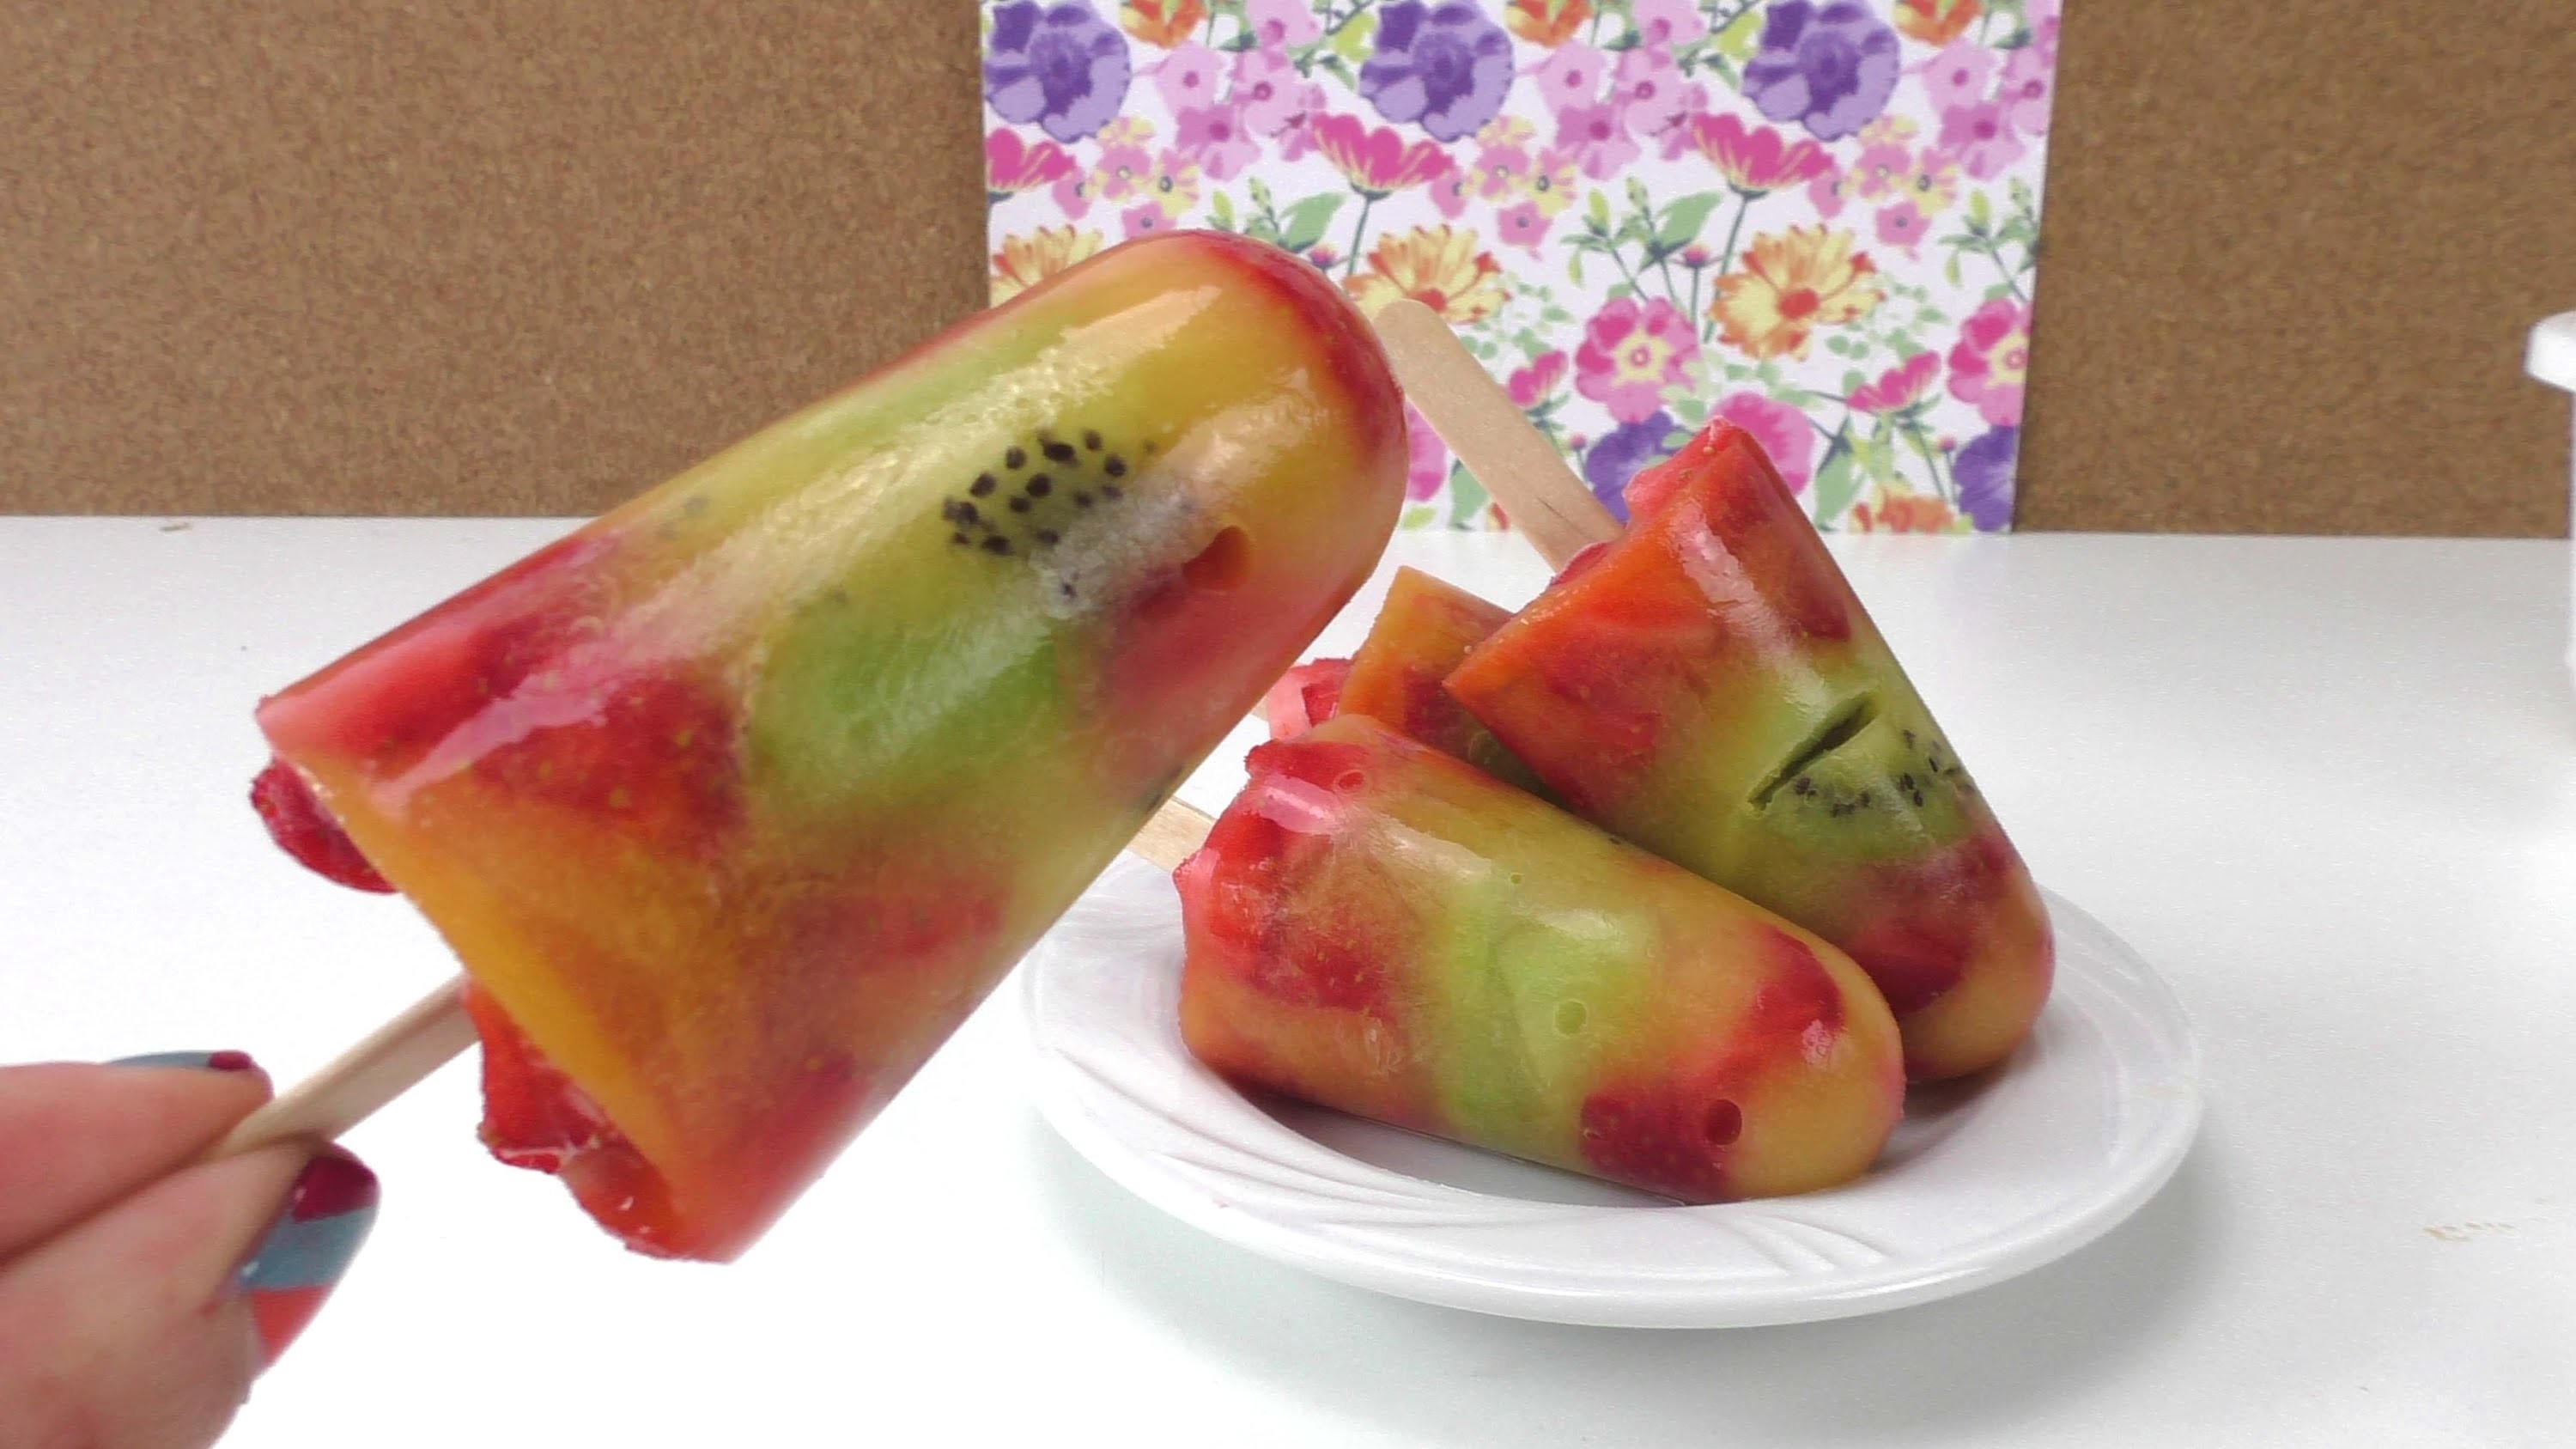 Eis mit Kiwi, Erdbeeren und O-Saft - DIY Früchte Eis - Eis am Stiel - lecker, einfach und gesund